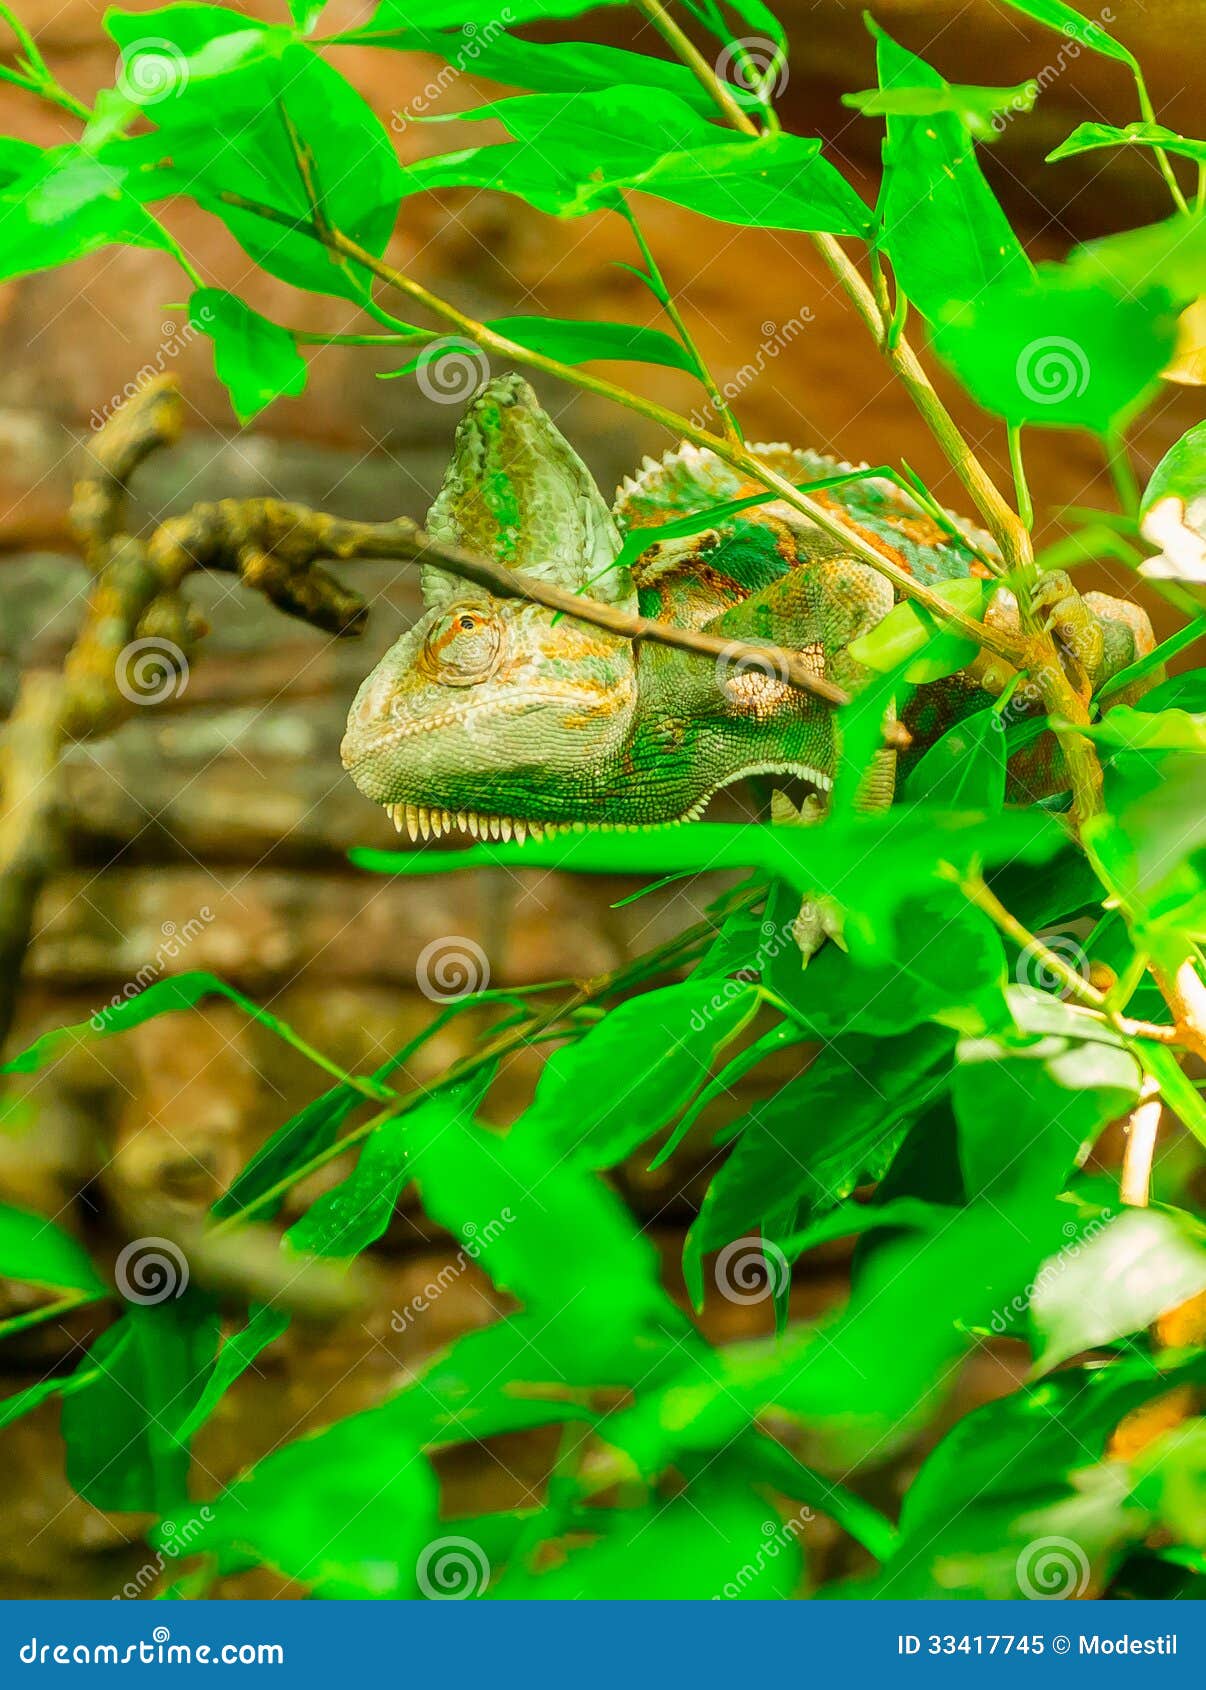 Chameleon Royalty Free Stock Photo - Image: 33417745